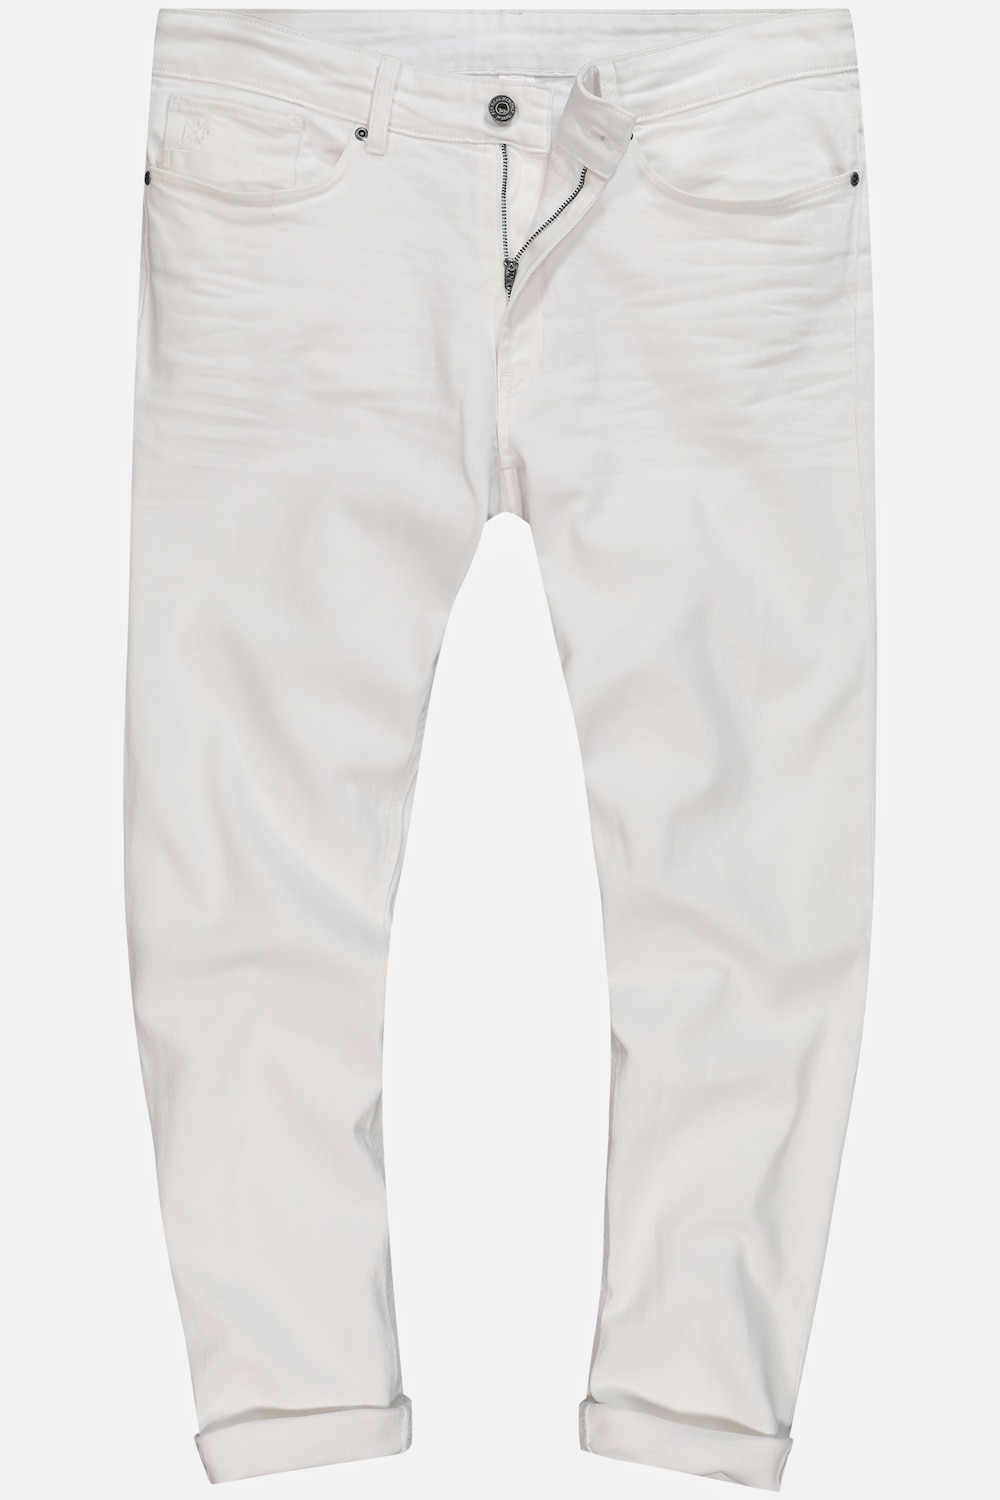 Grote Maten Jeans, Heren, wit, Maat: 54, Katoen, JP1880